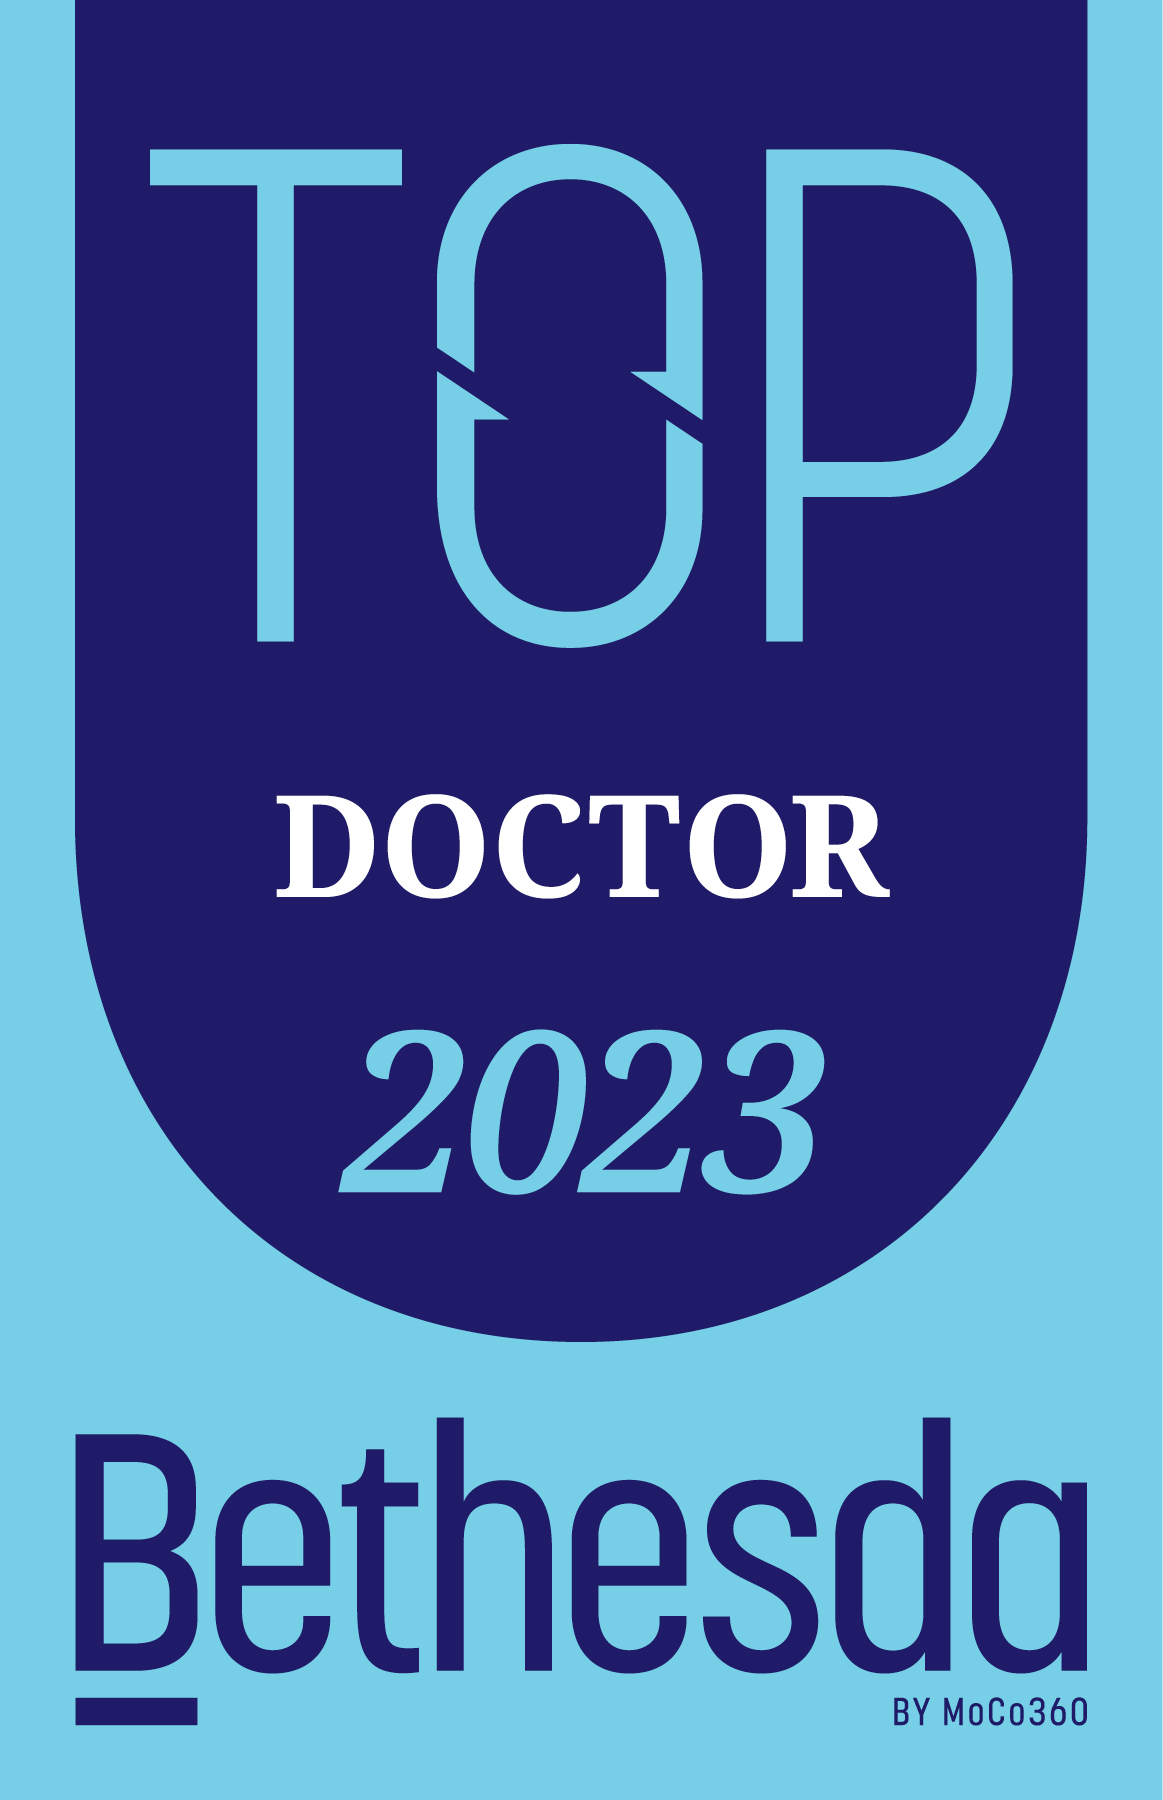 Bethesda Top Doctor 2023